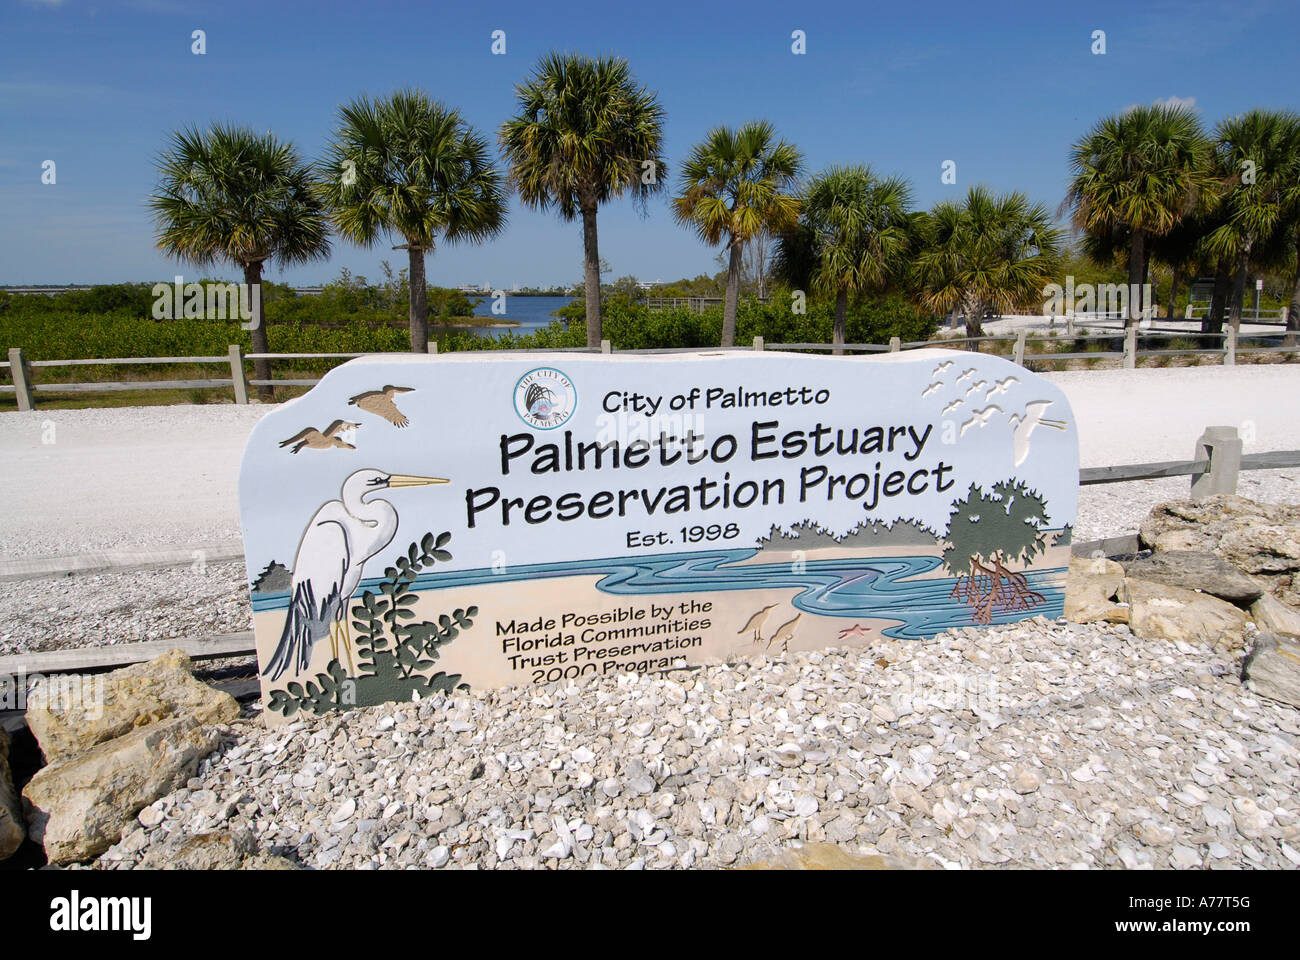 Stadt von Palmetto Florida FL Fla Mündung süß- und Salzwasser-Filter-System Preservation Project Stockfoto